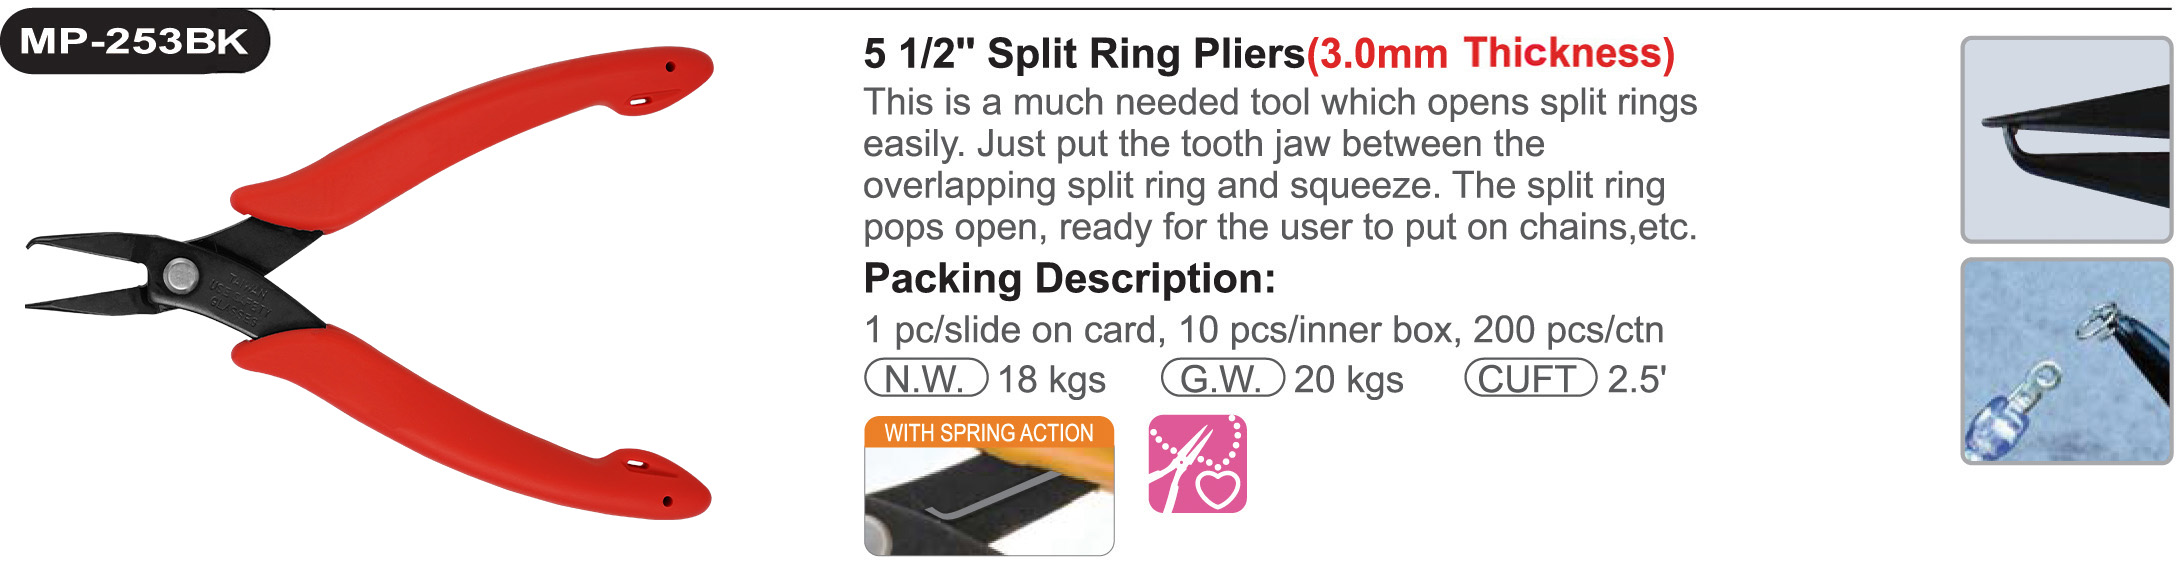 proimages/product/pliers/special_pliers/Split_Ring_Pliers/MP-253BK/MP-253BK.jpg